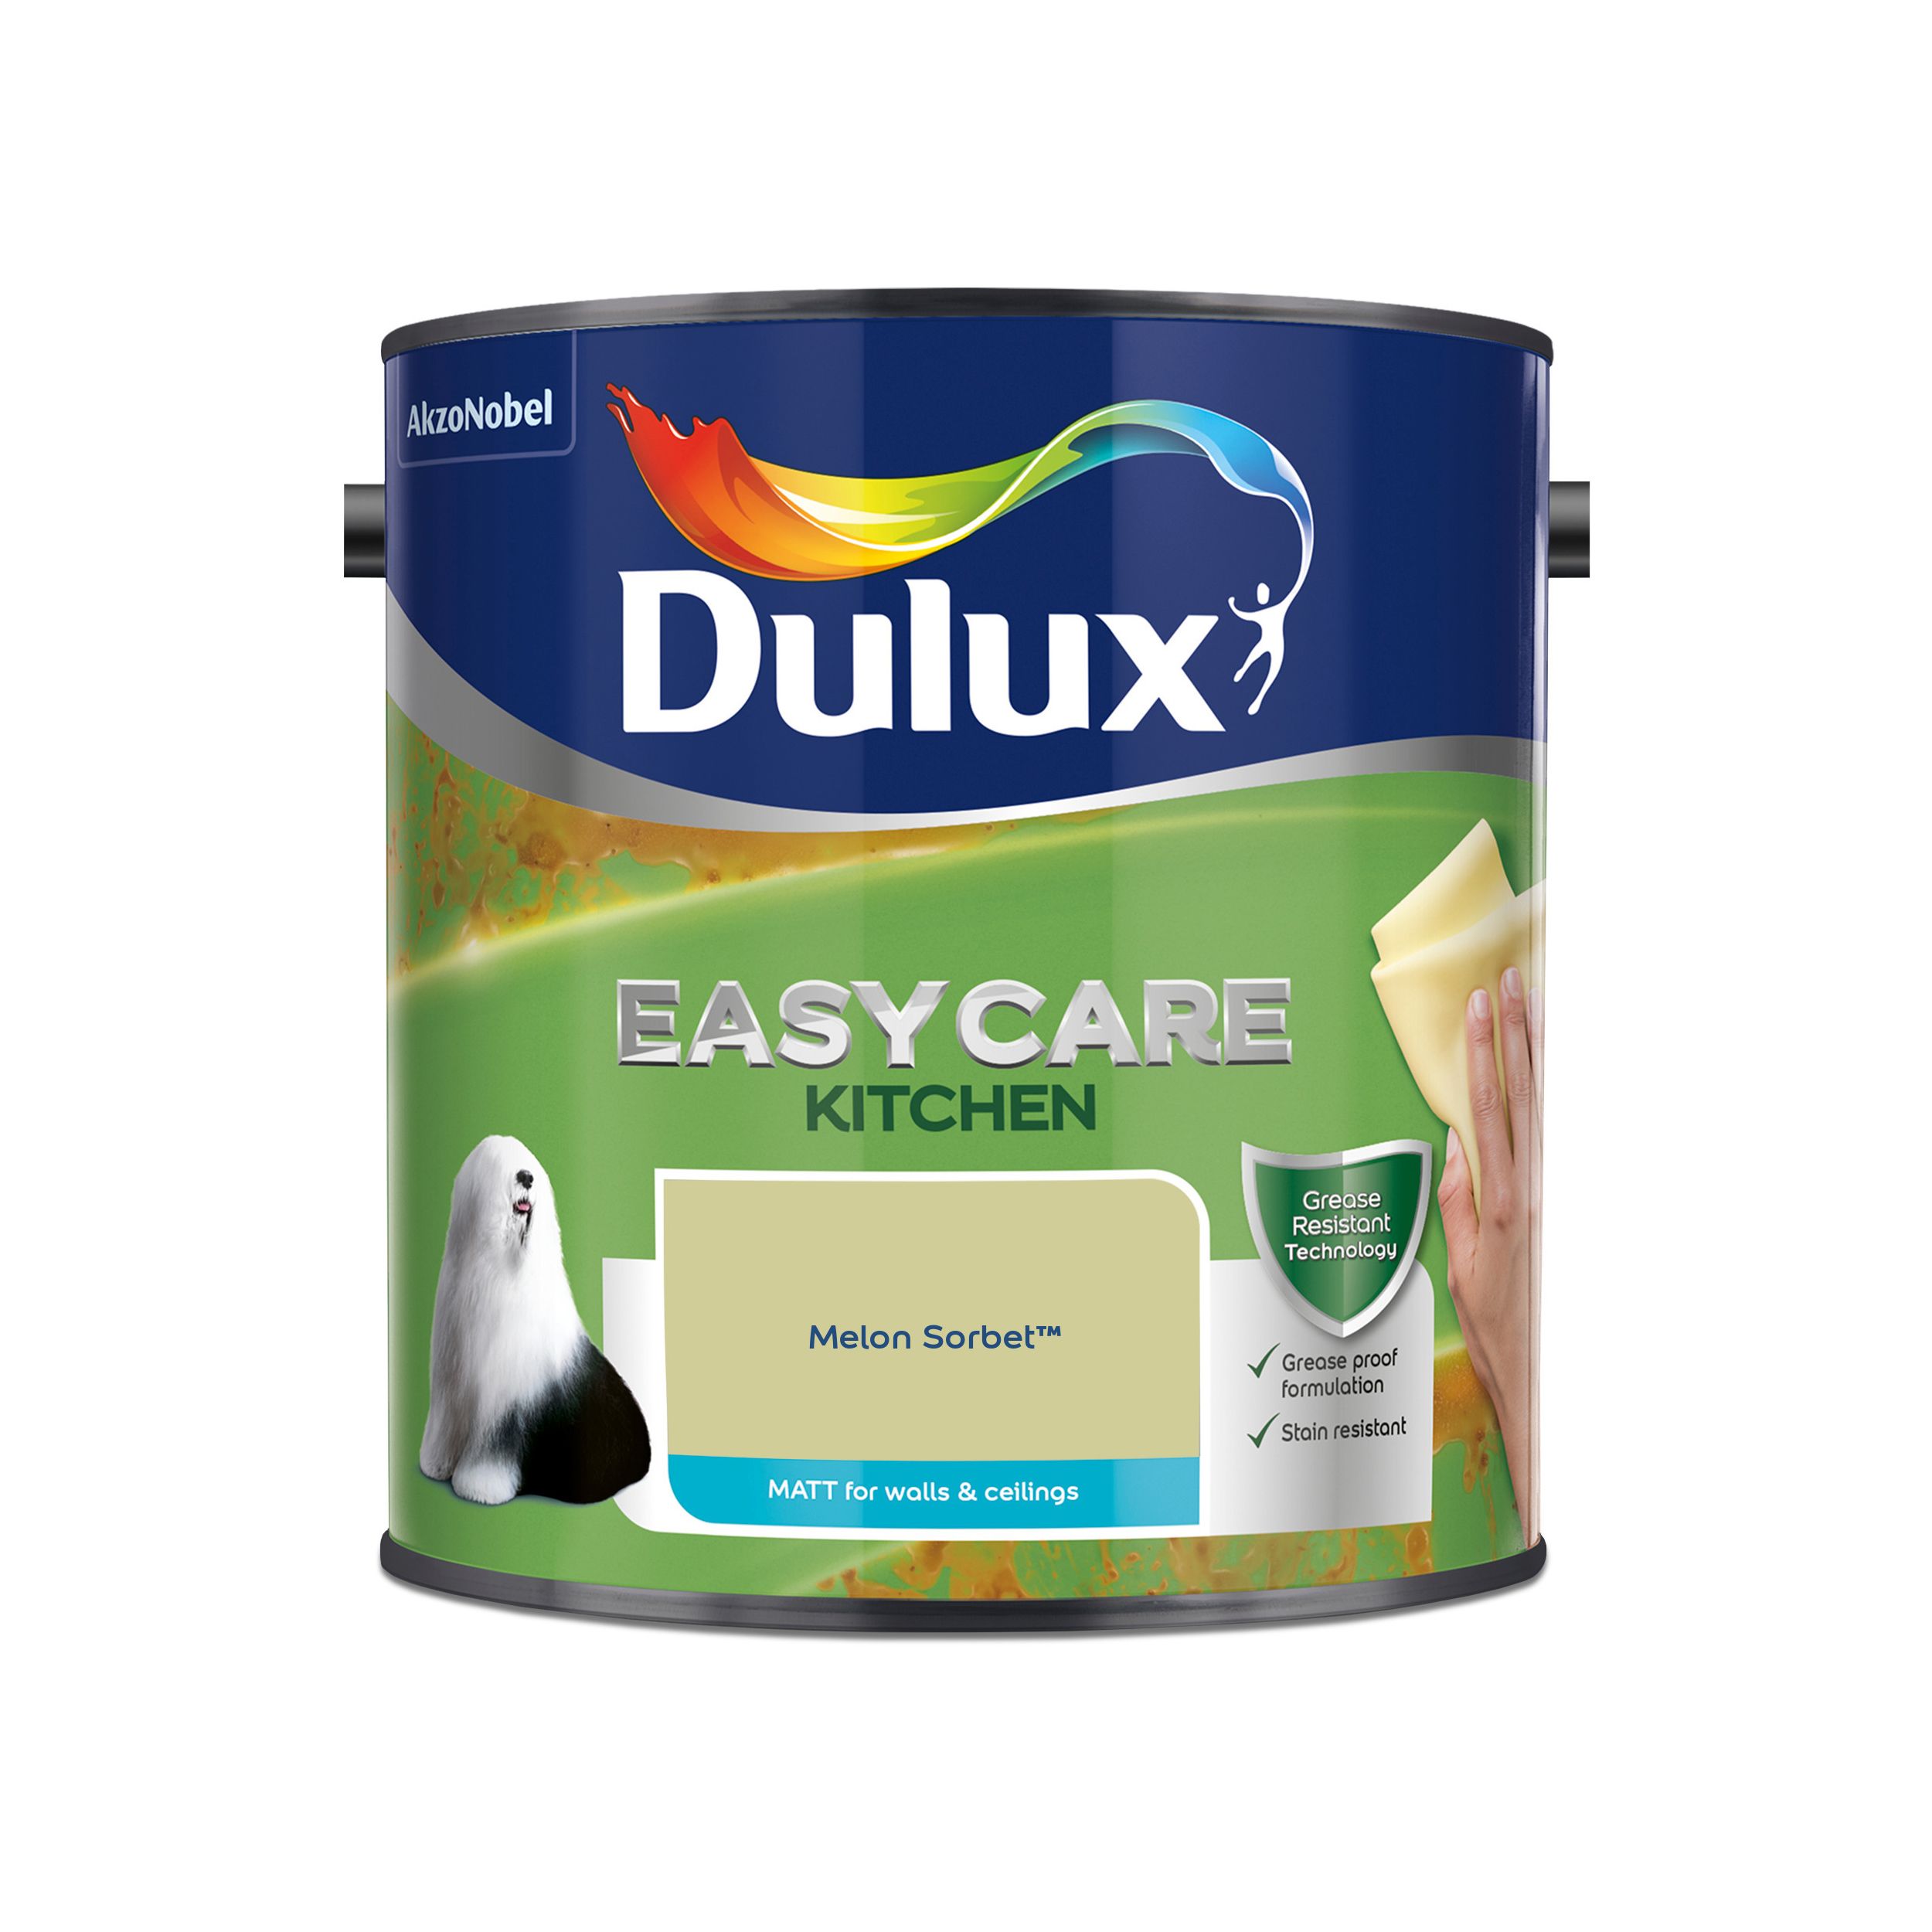 Dulux Easycare Kitchen Melon Sorbet Matt Emulsion paint, 2.5L